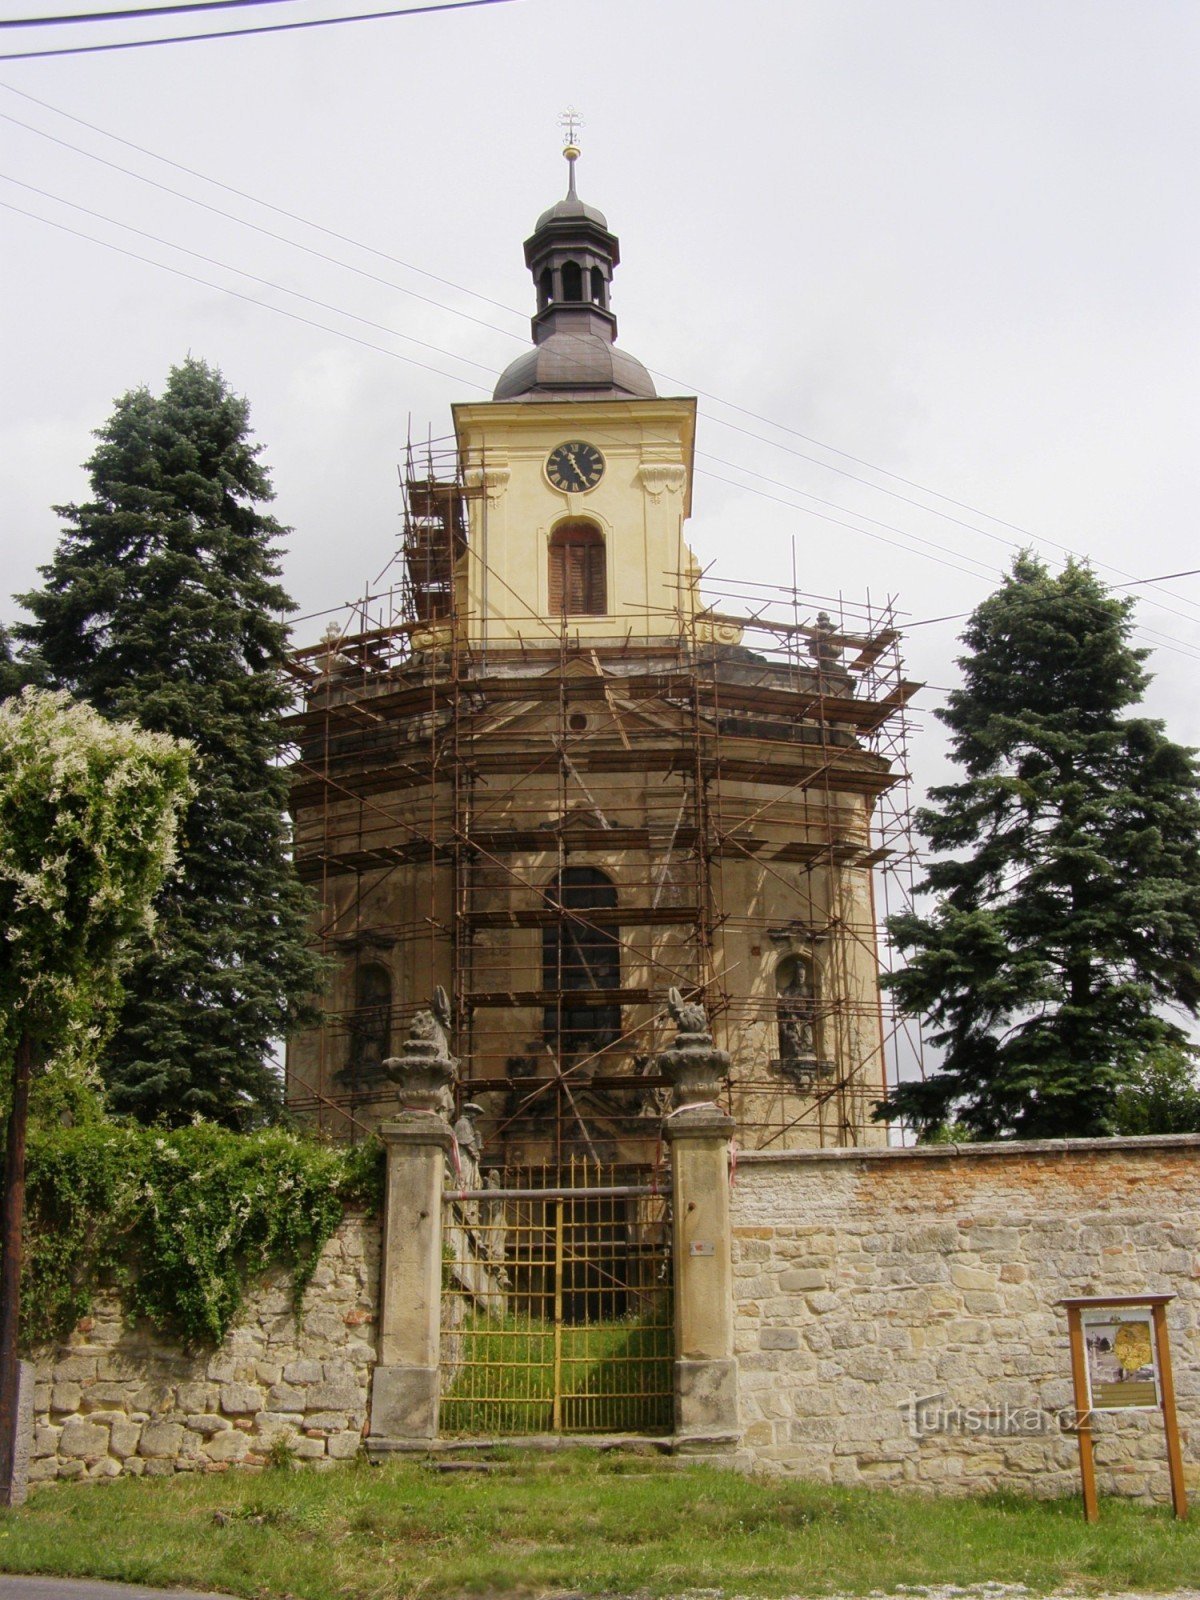 Veliš - nhà thờ St. Wenceslas